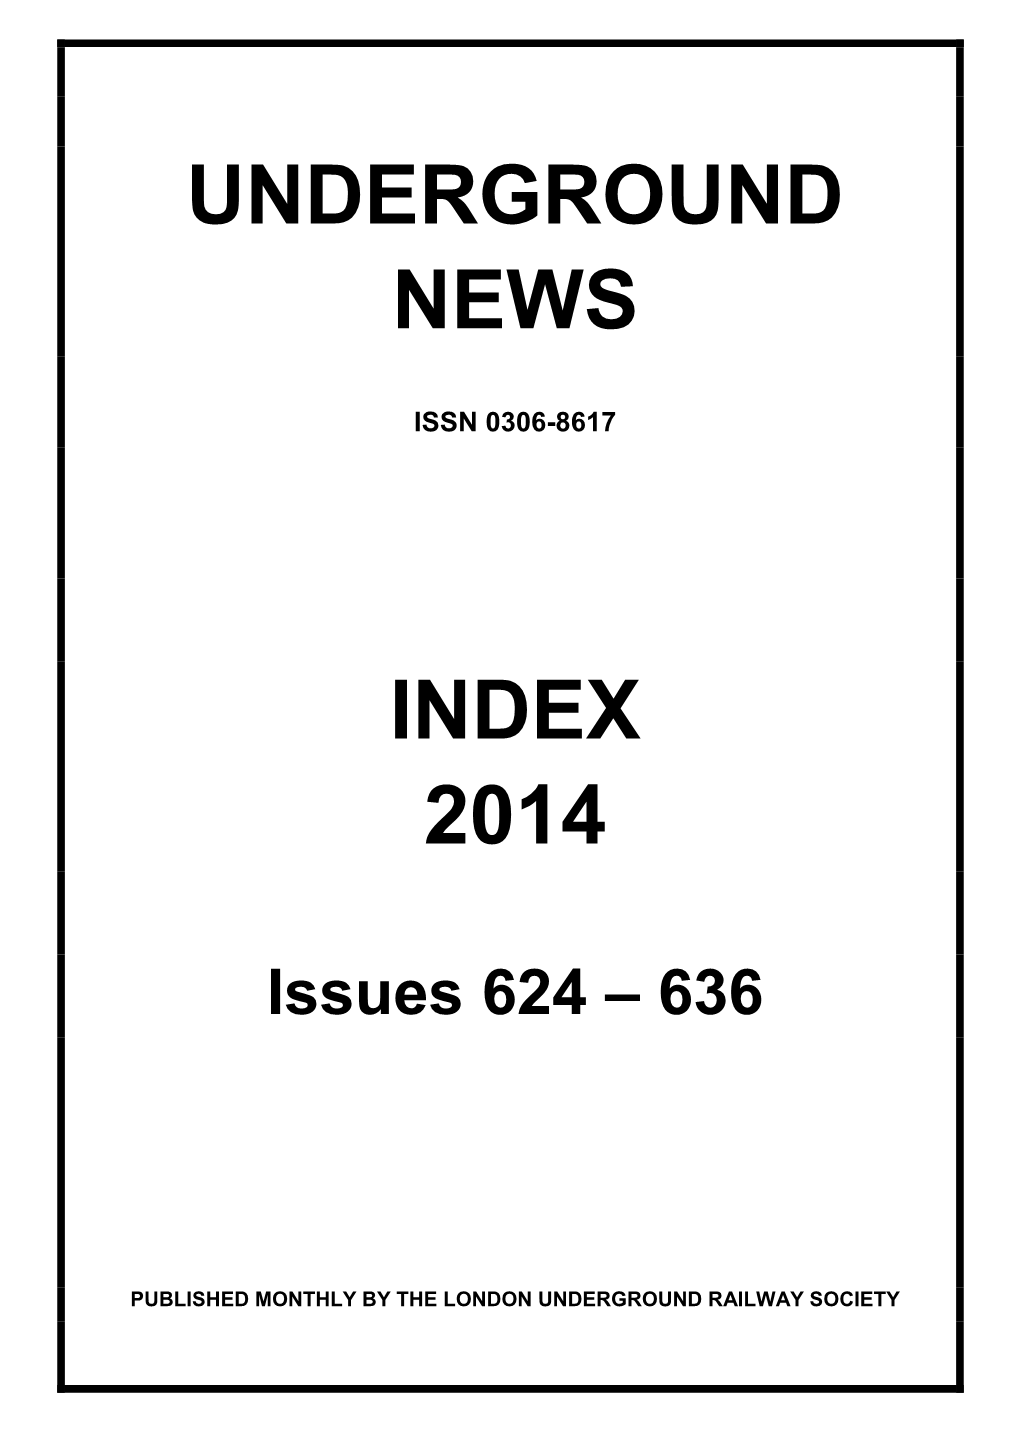 Underground News Index 2014